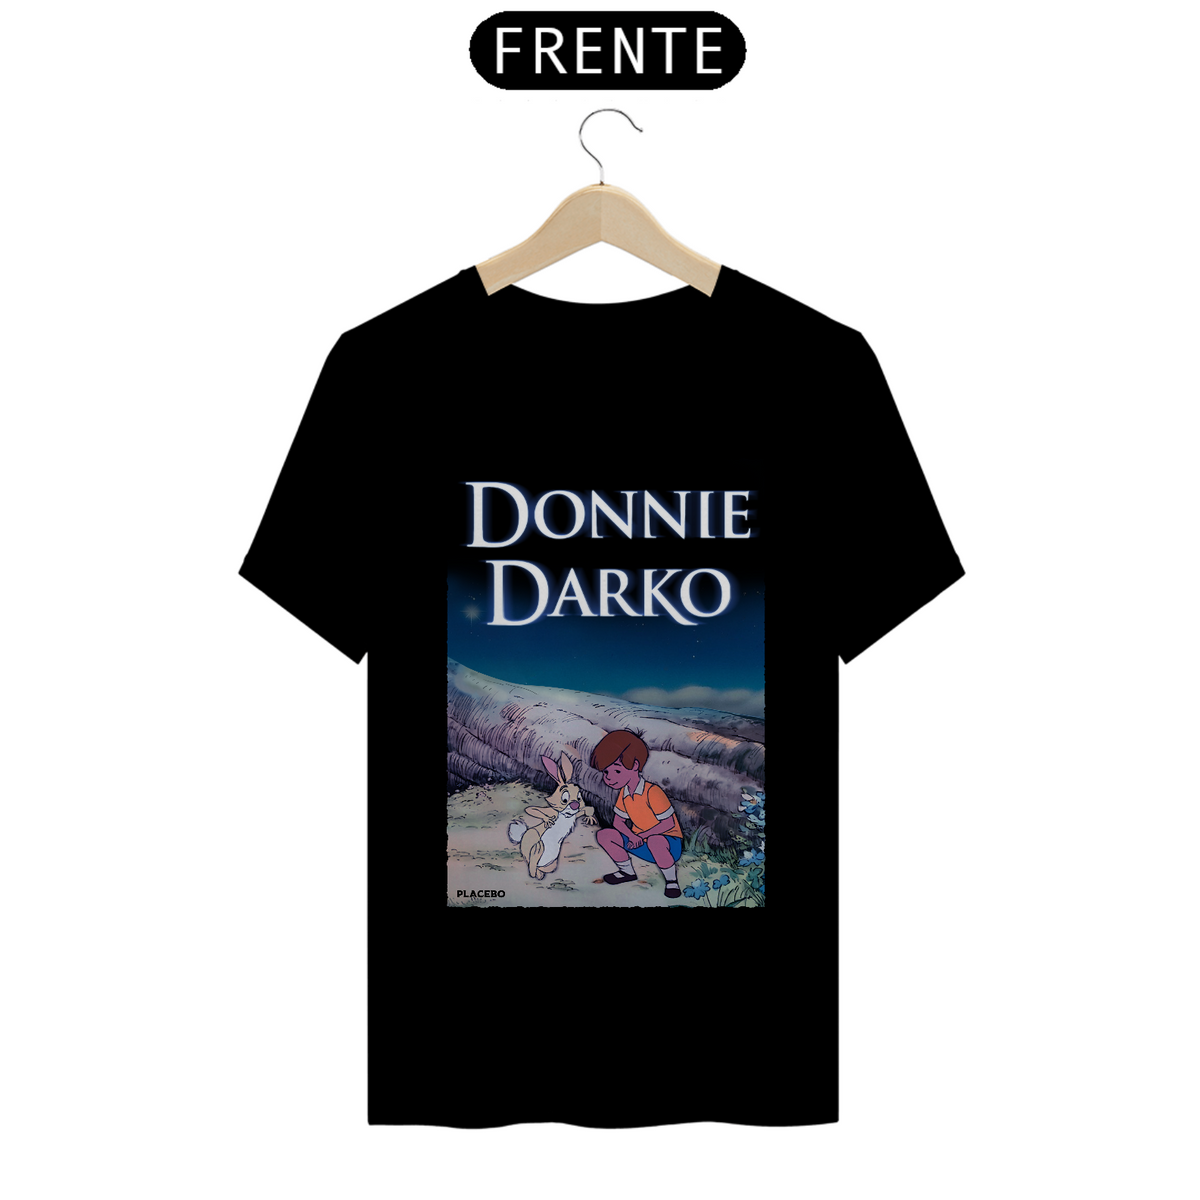 Nome do produto: Donnie darko